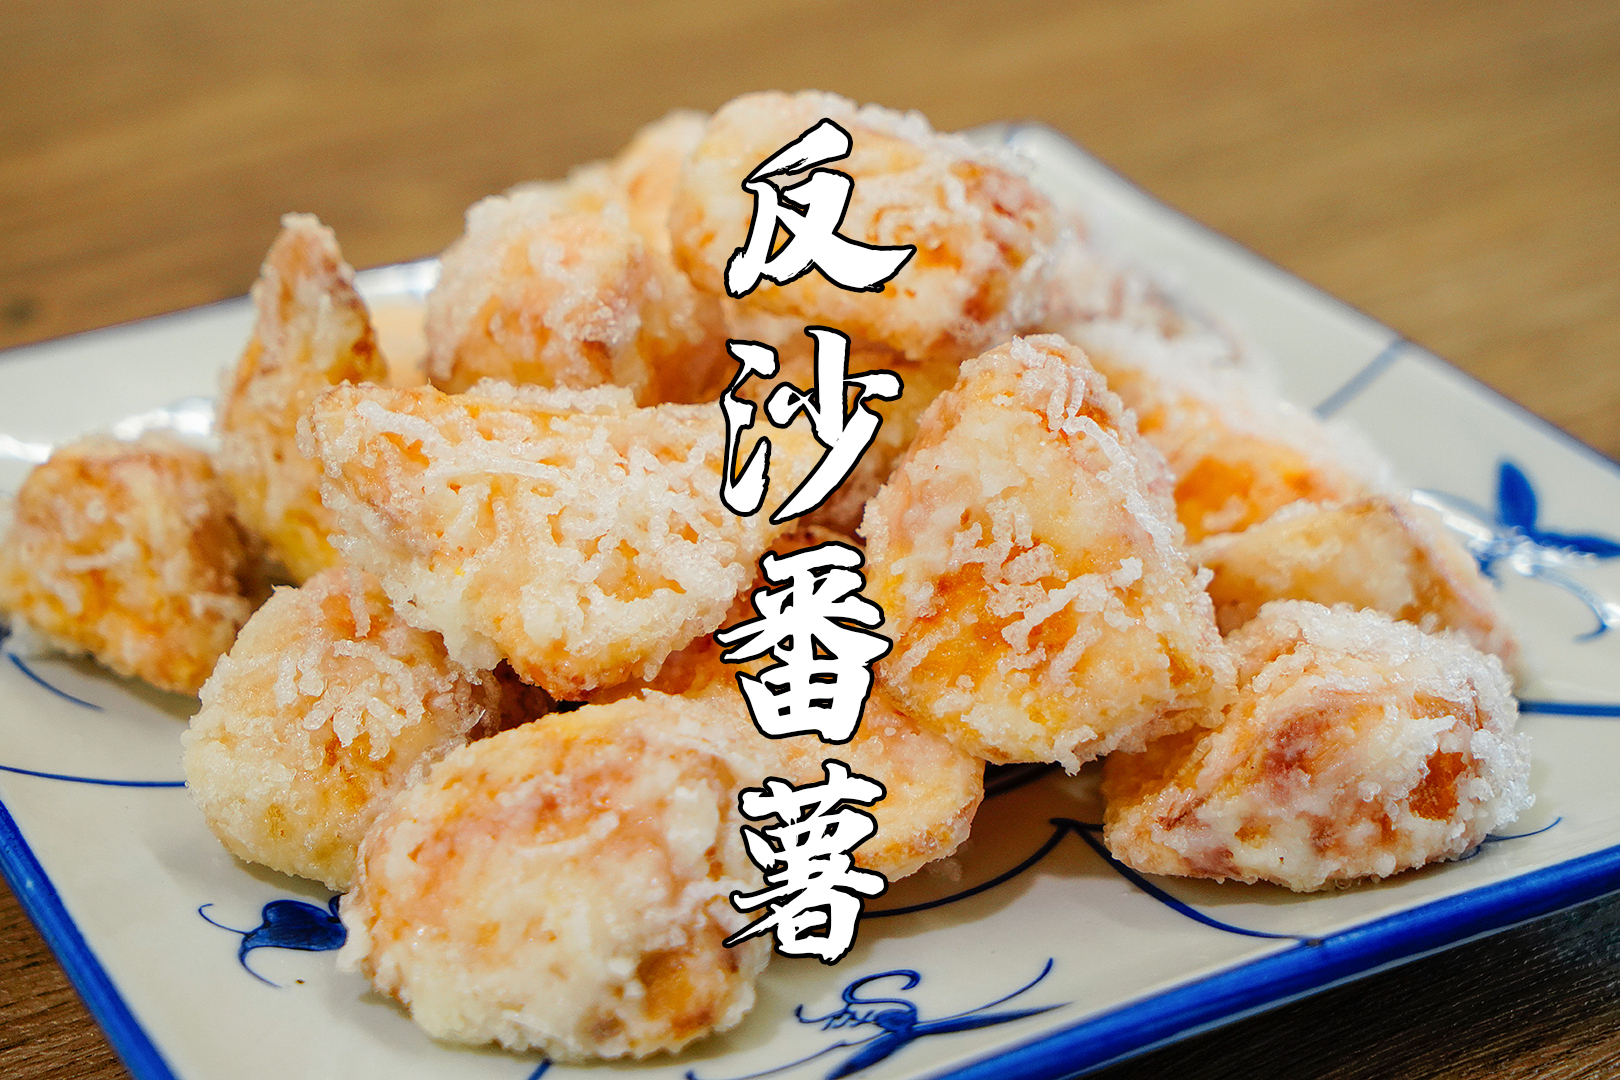 中秋节快到了,学一道潮汕翻砂番薯,简单易做口感好